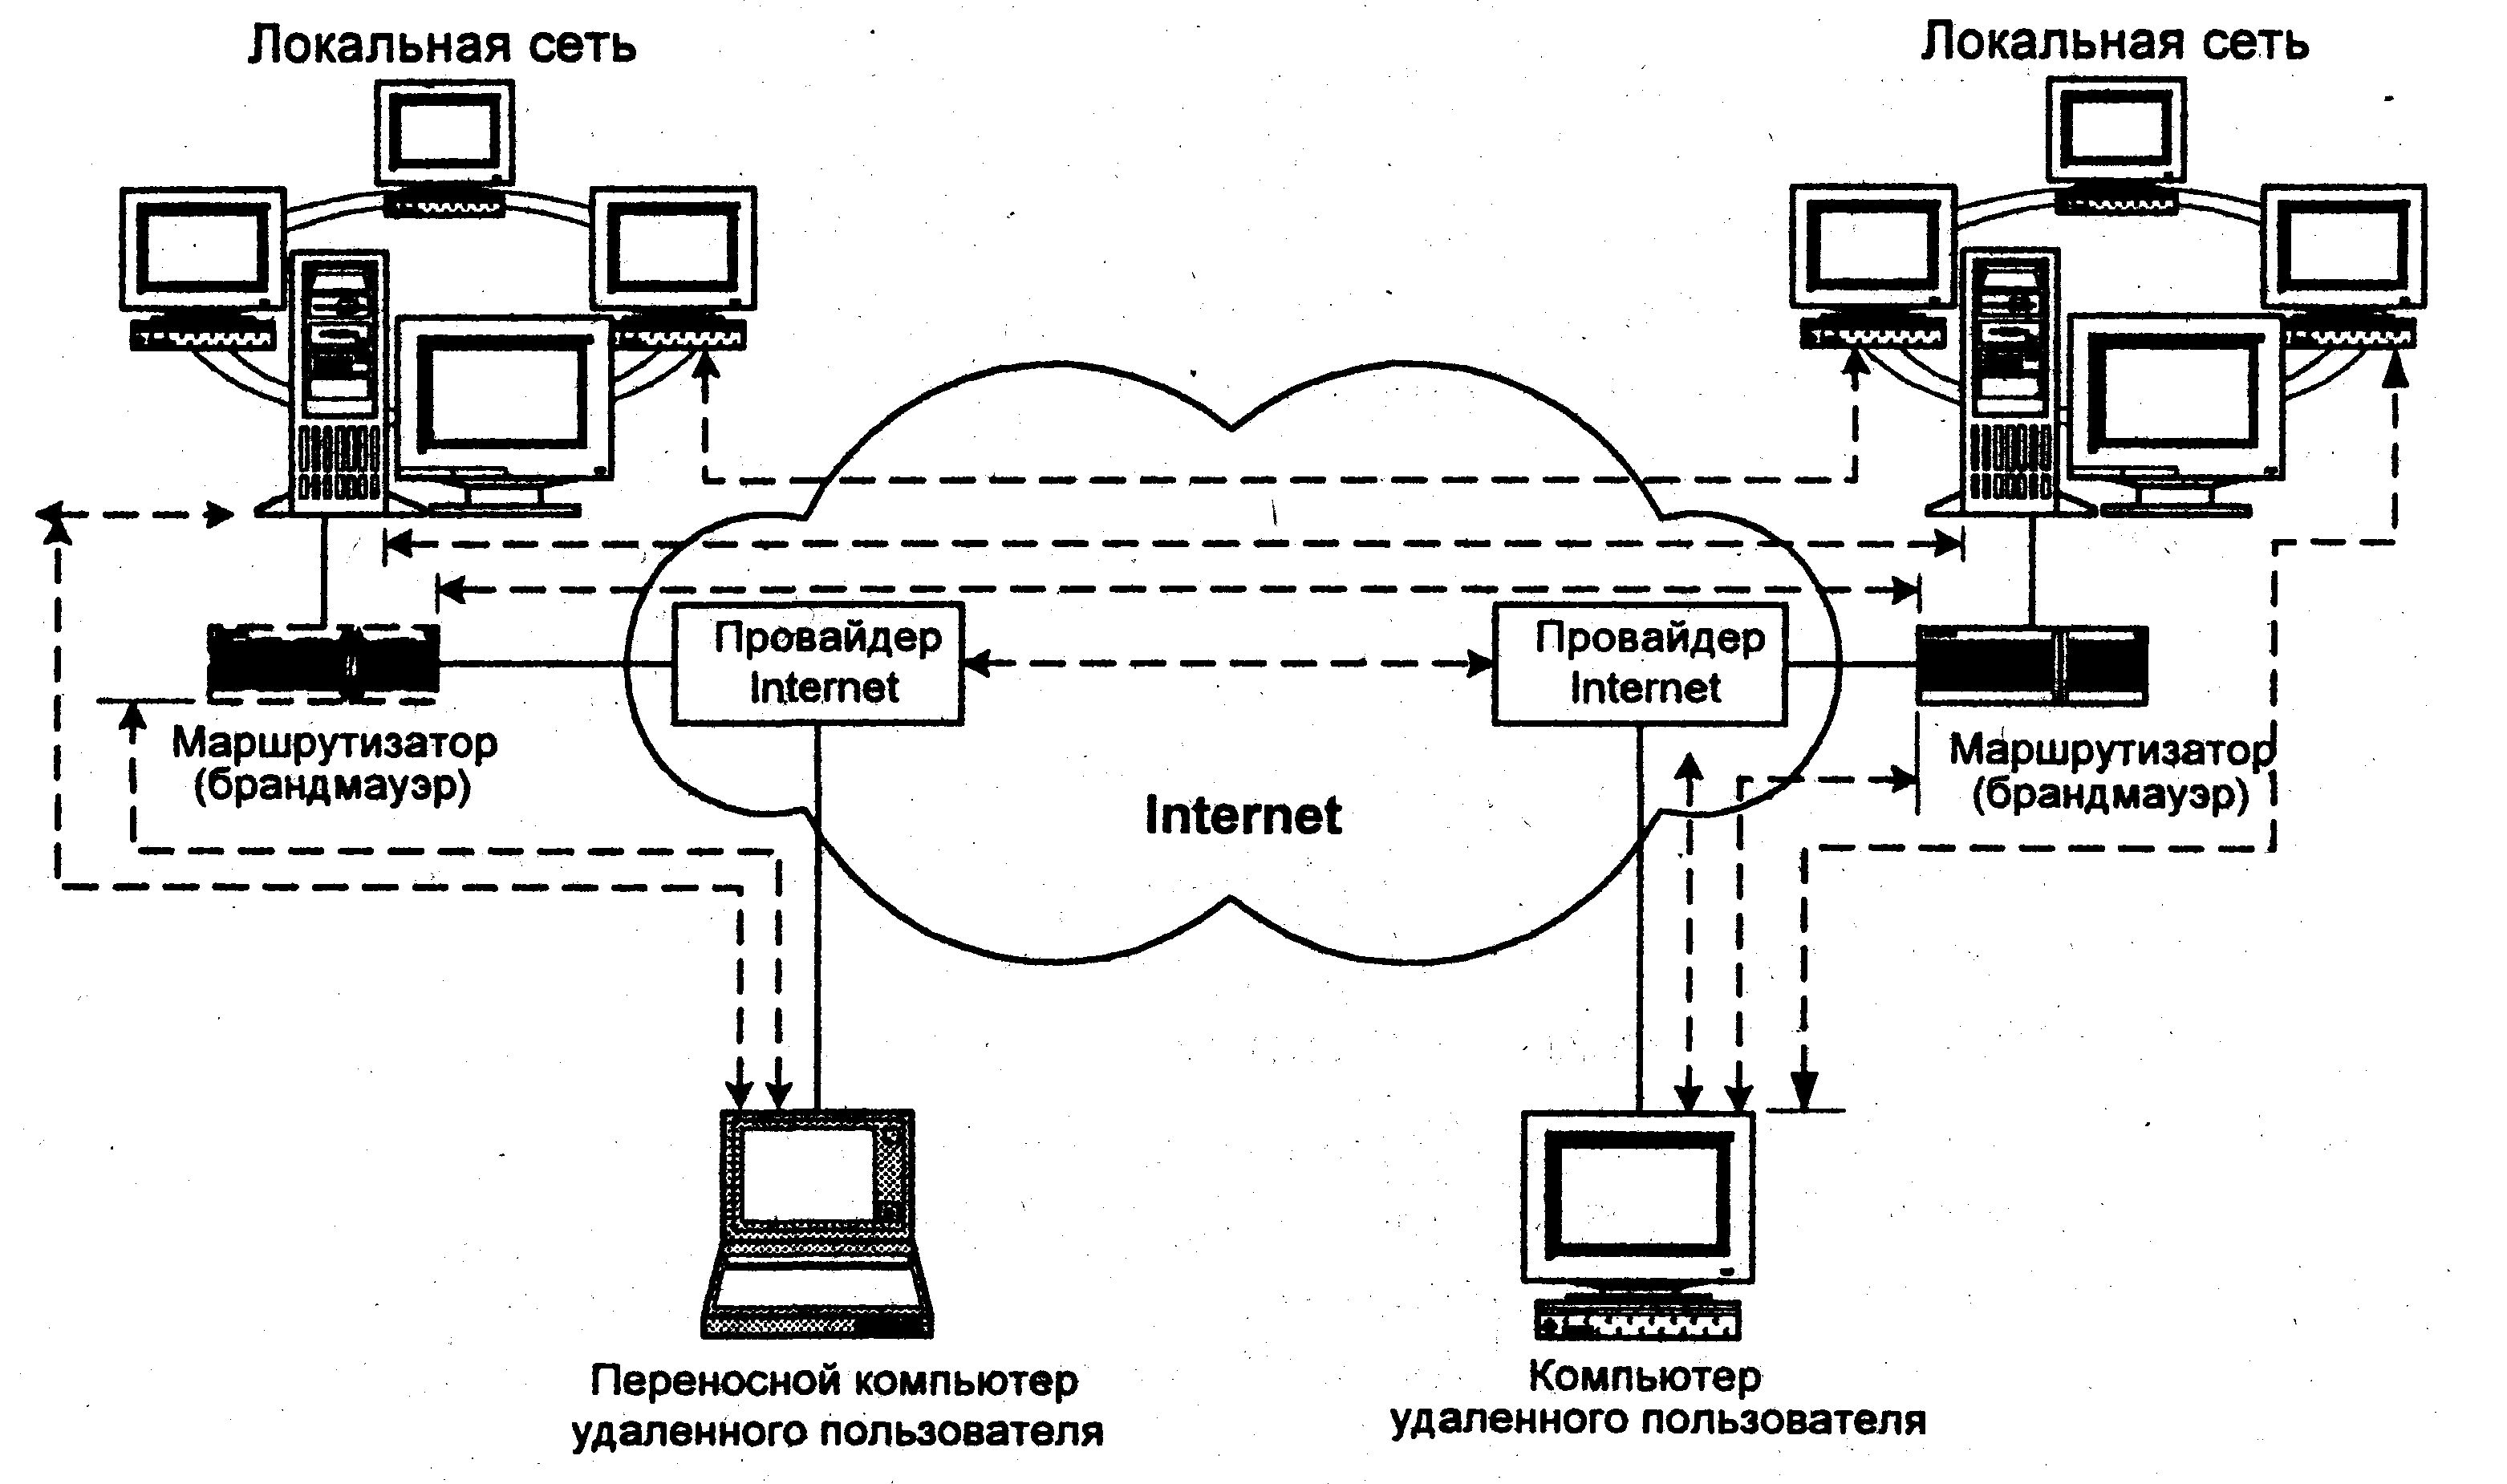 Локальная вычислительная сеть локальные вычислительные сети. Моделирование компьютерных сетей топология звезда схема. Локально вычислительная сеть схема. Локальной вычеслительная сеть. Организации локально вычислительных сетей